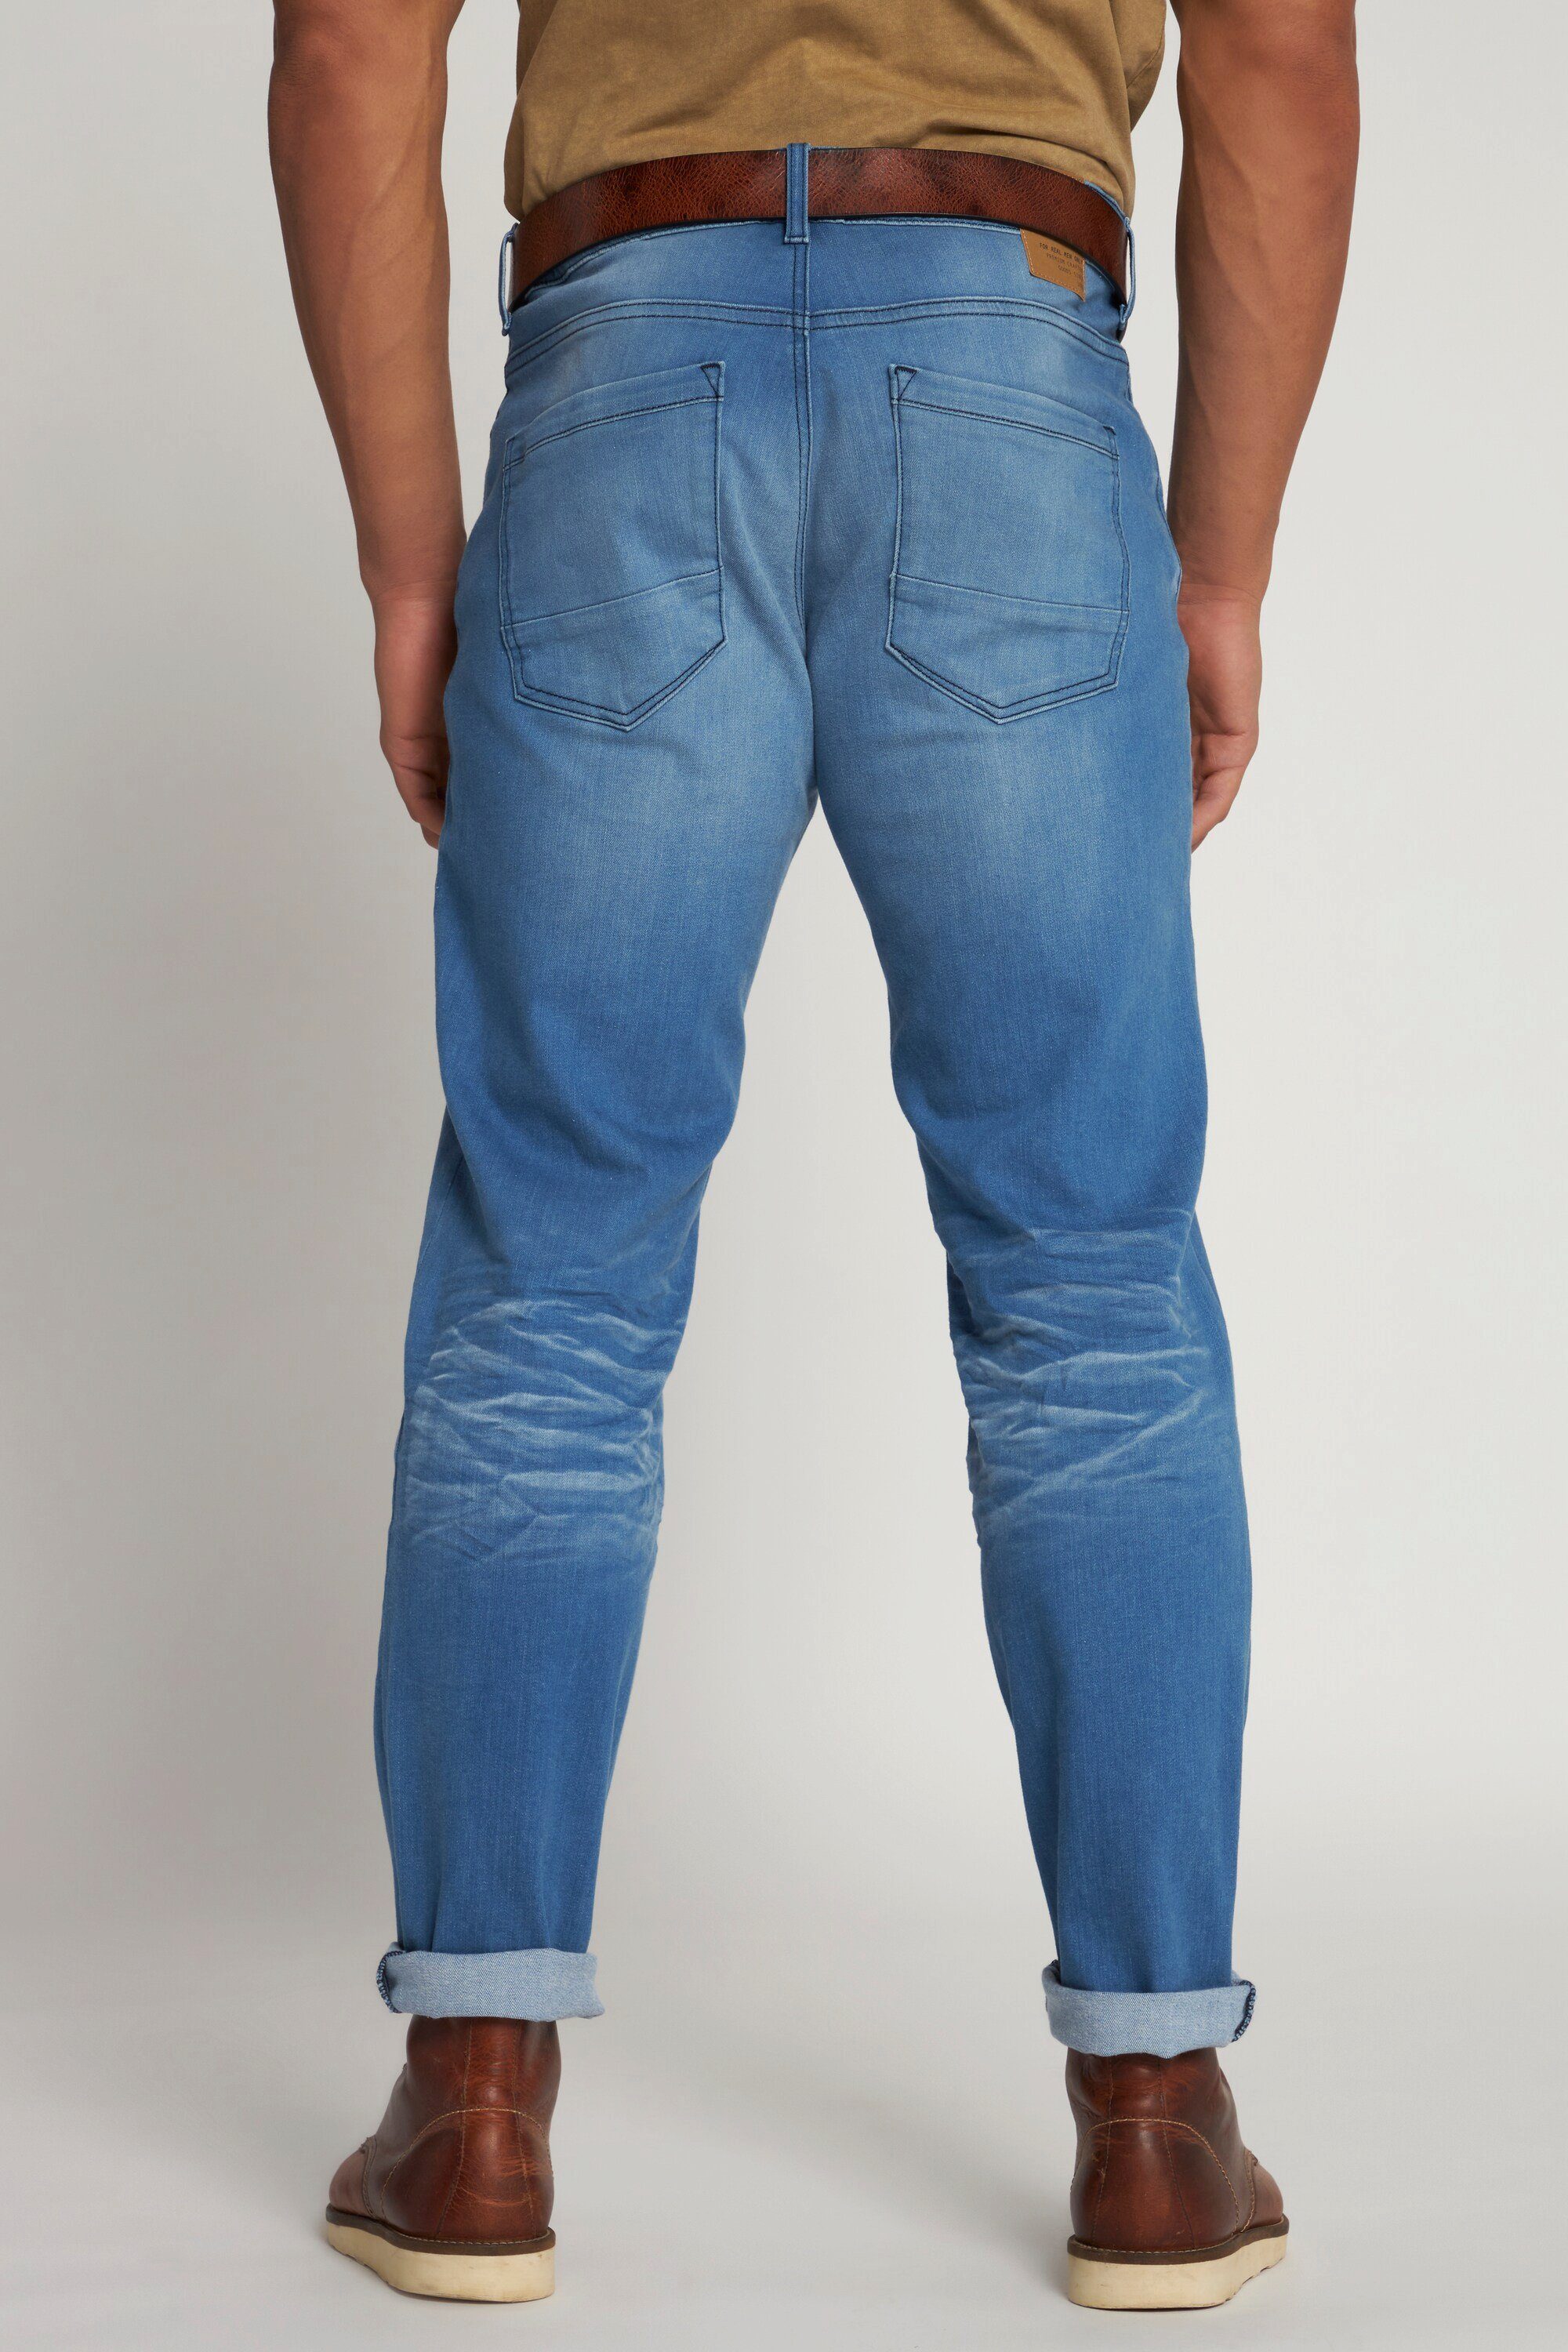 Vintage JP1880 Loose 5-Pocket-Jeans blue light Denim Tapered Jeans Look Fit